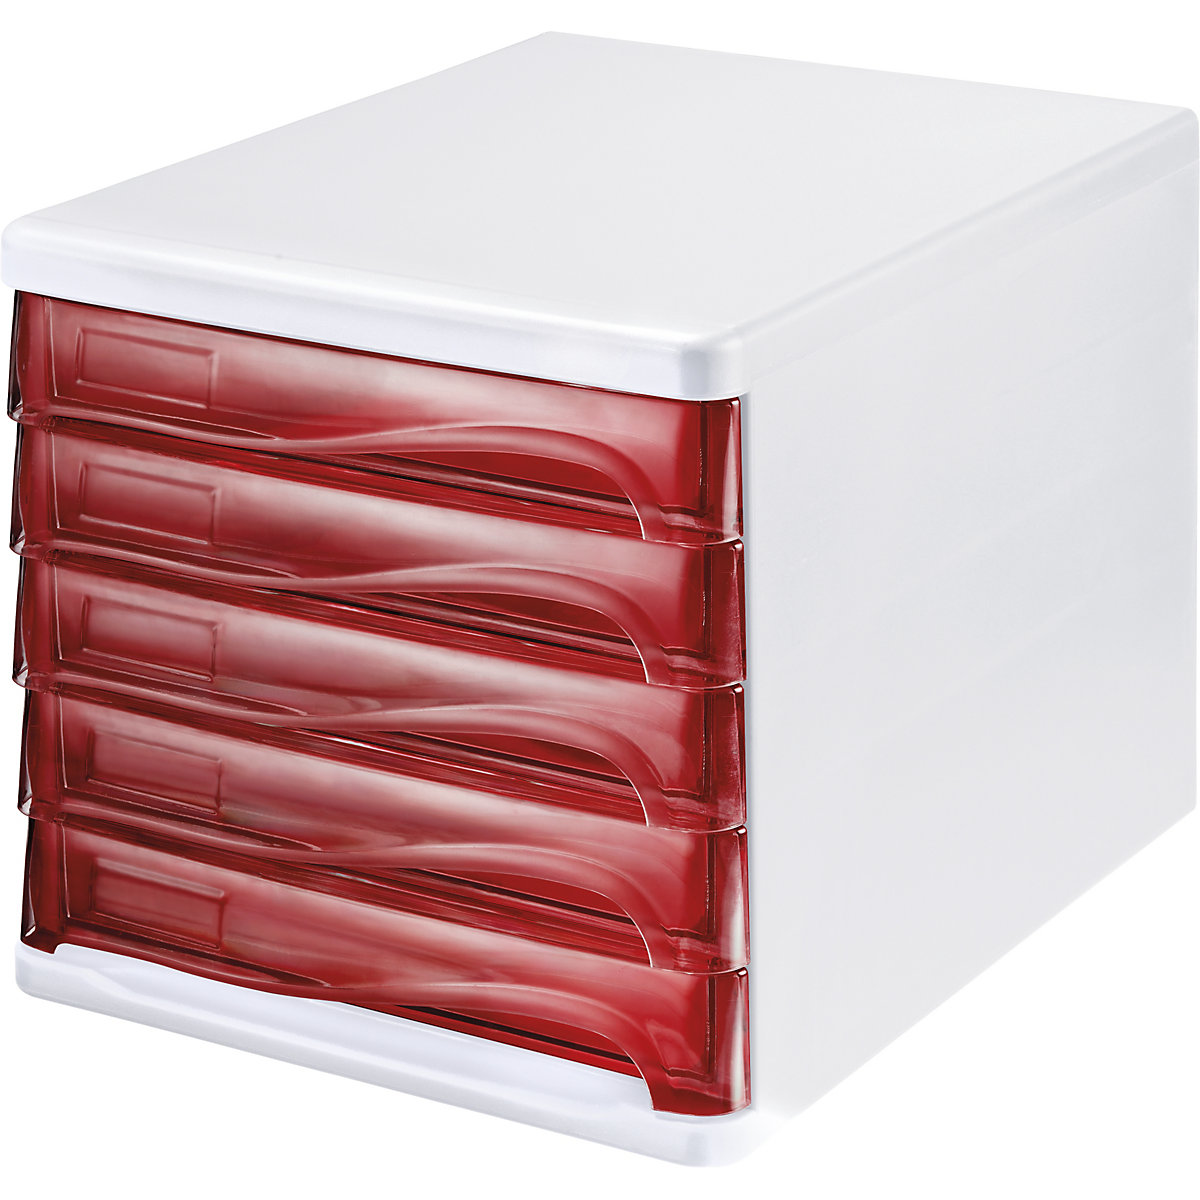 Schubladenbox helit, Gehäusefarbe Weiß, VE 4 Stk, Schubladenfarbe Rot, transparent